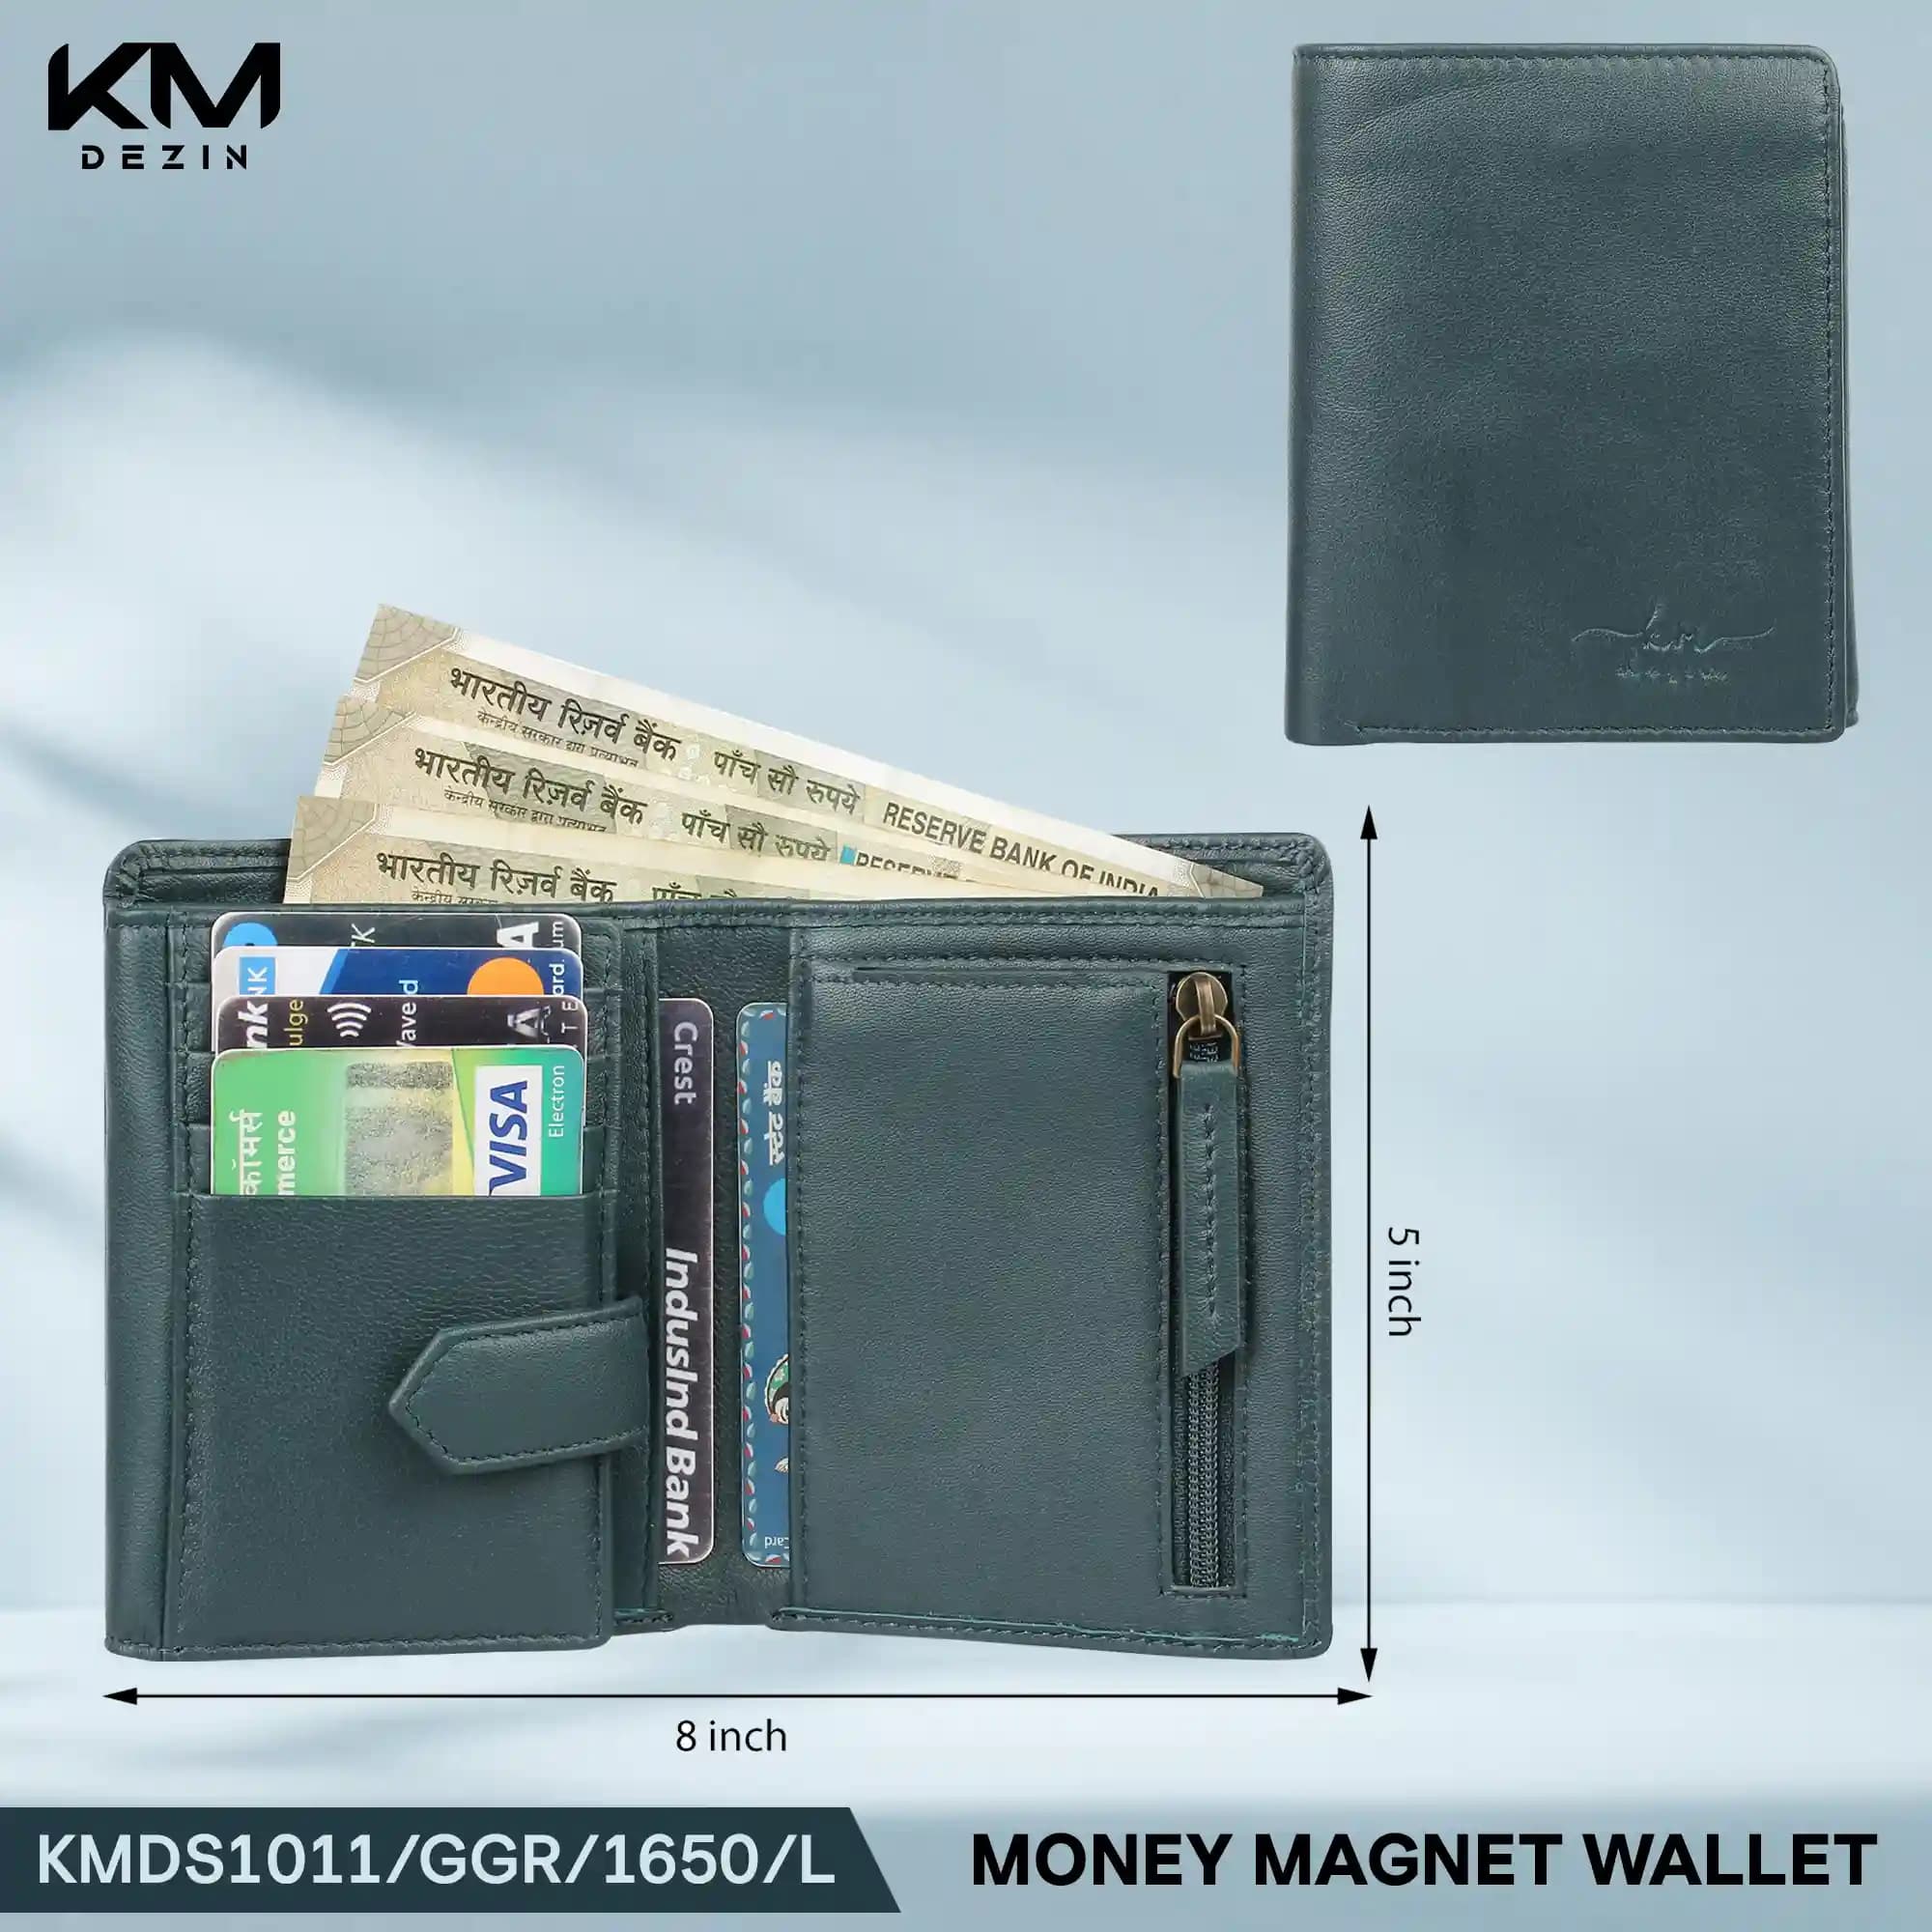 Money Magnet Wallet